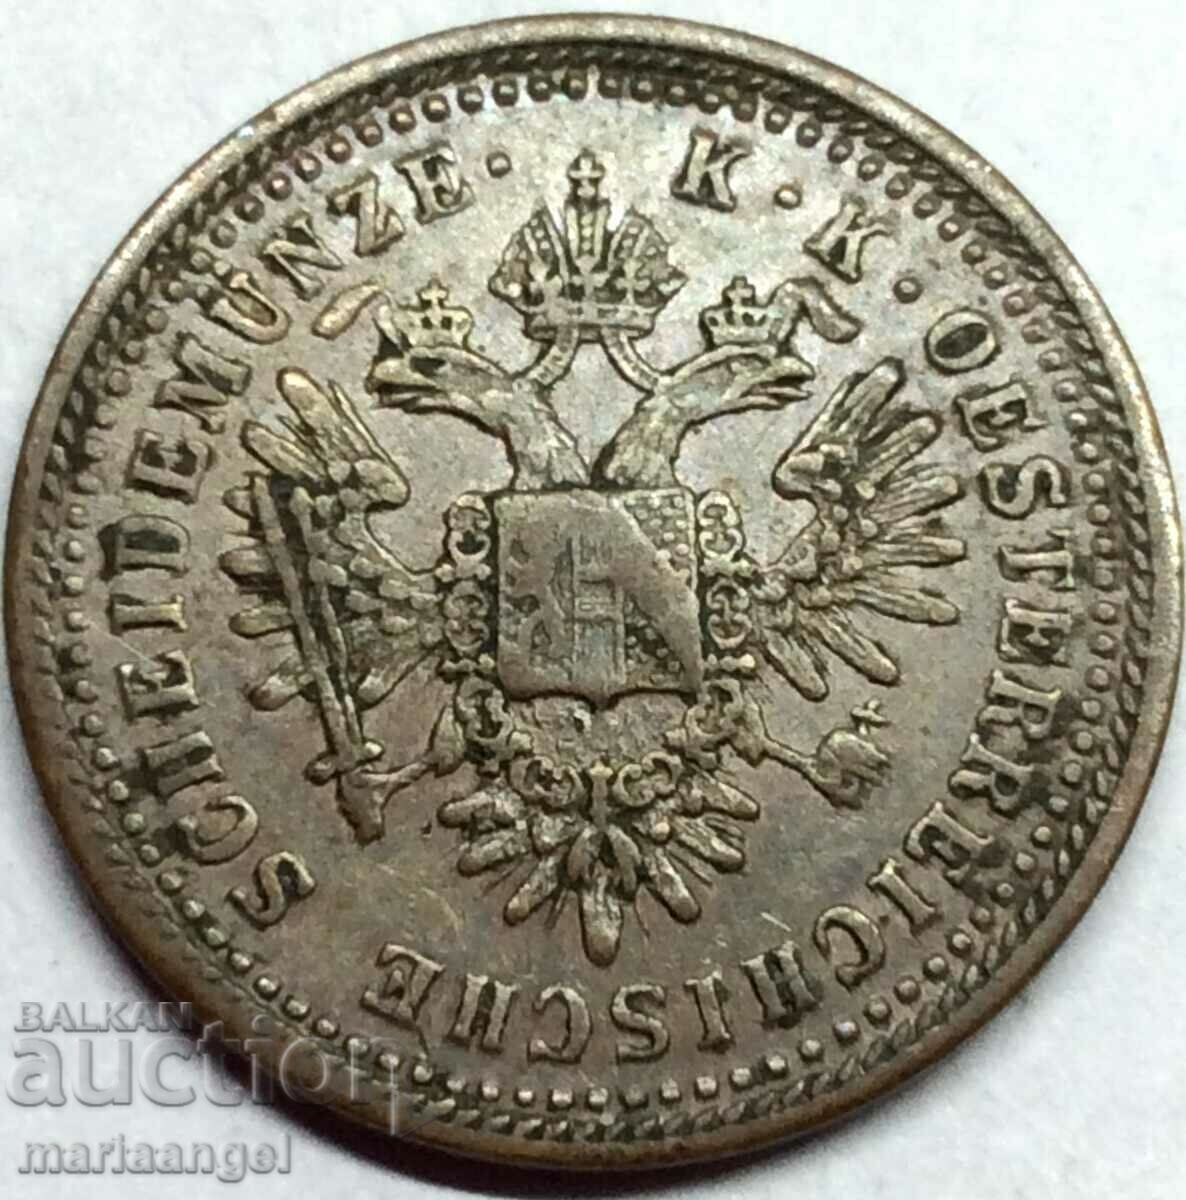 1 Kreuzer 1851 In Austria - quite rare